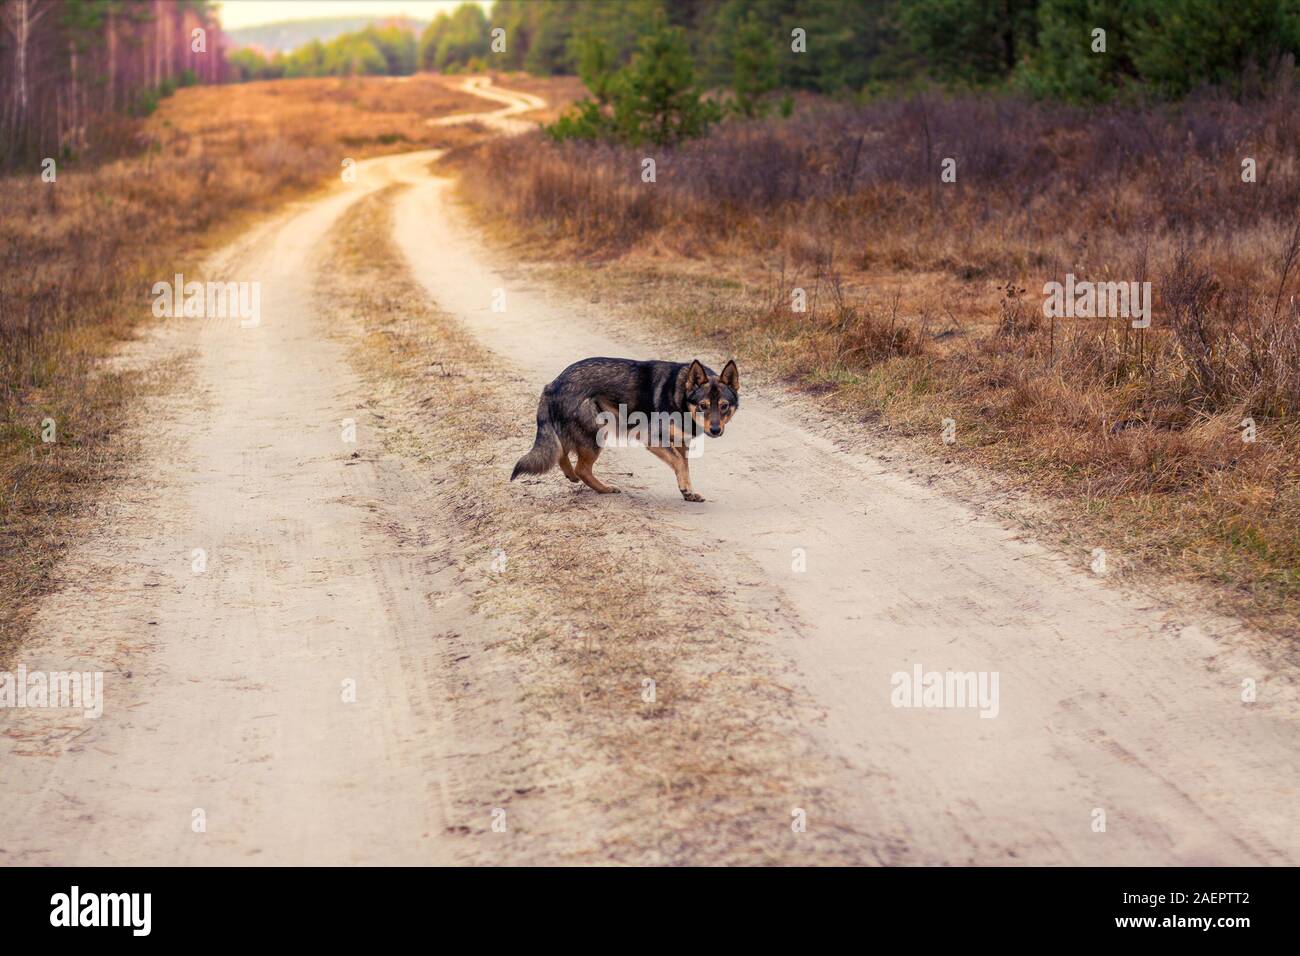 Un hybride loup chien marche le long d'un chemin de terre dans la forêt d'automne. Portrait of a dog walking outdoors Banque D'Images